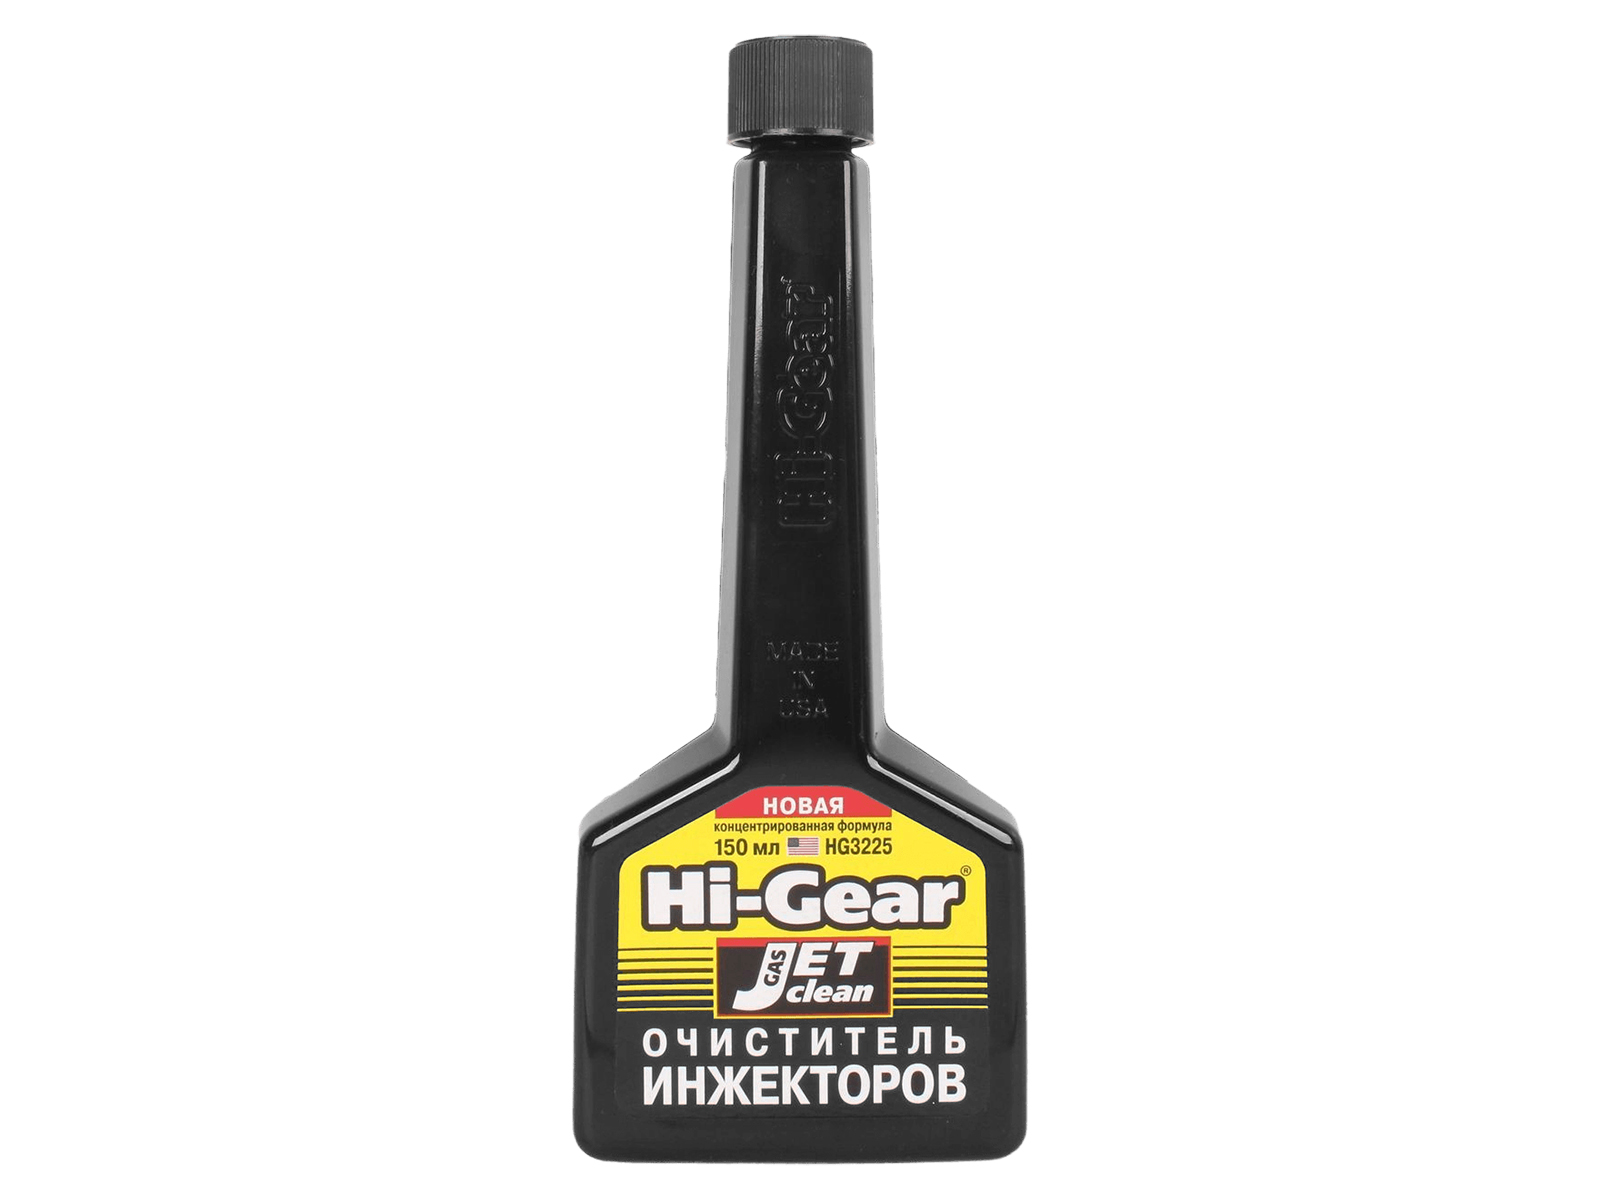 Очиститель инжекторов Hi-Gear 150мл фотография №1